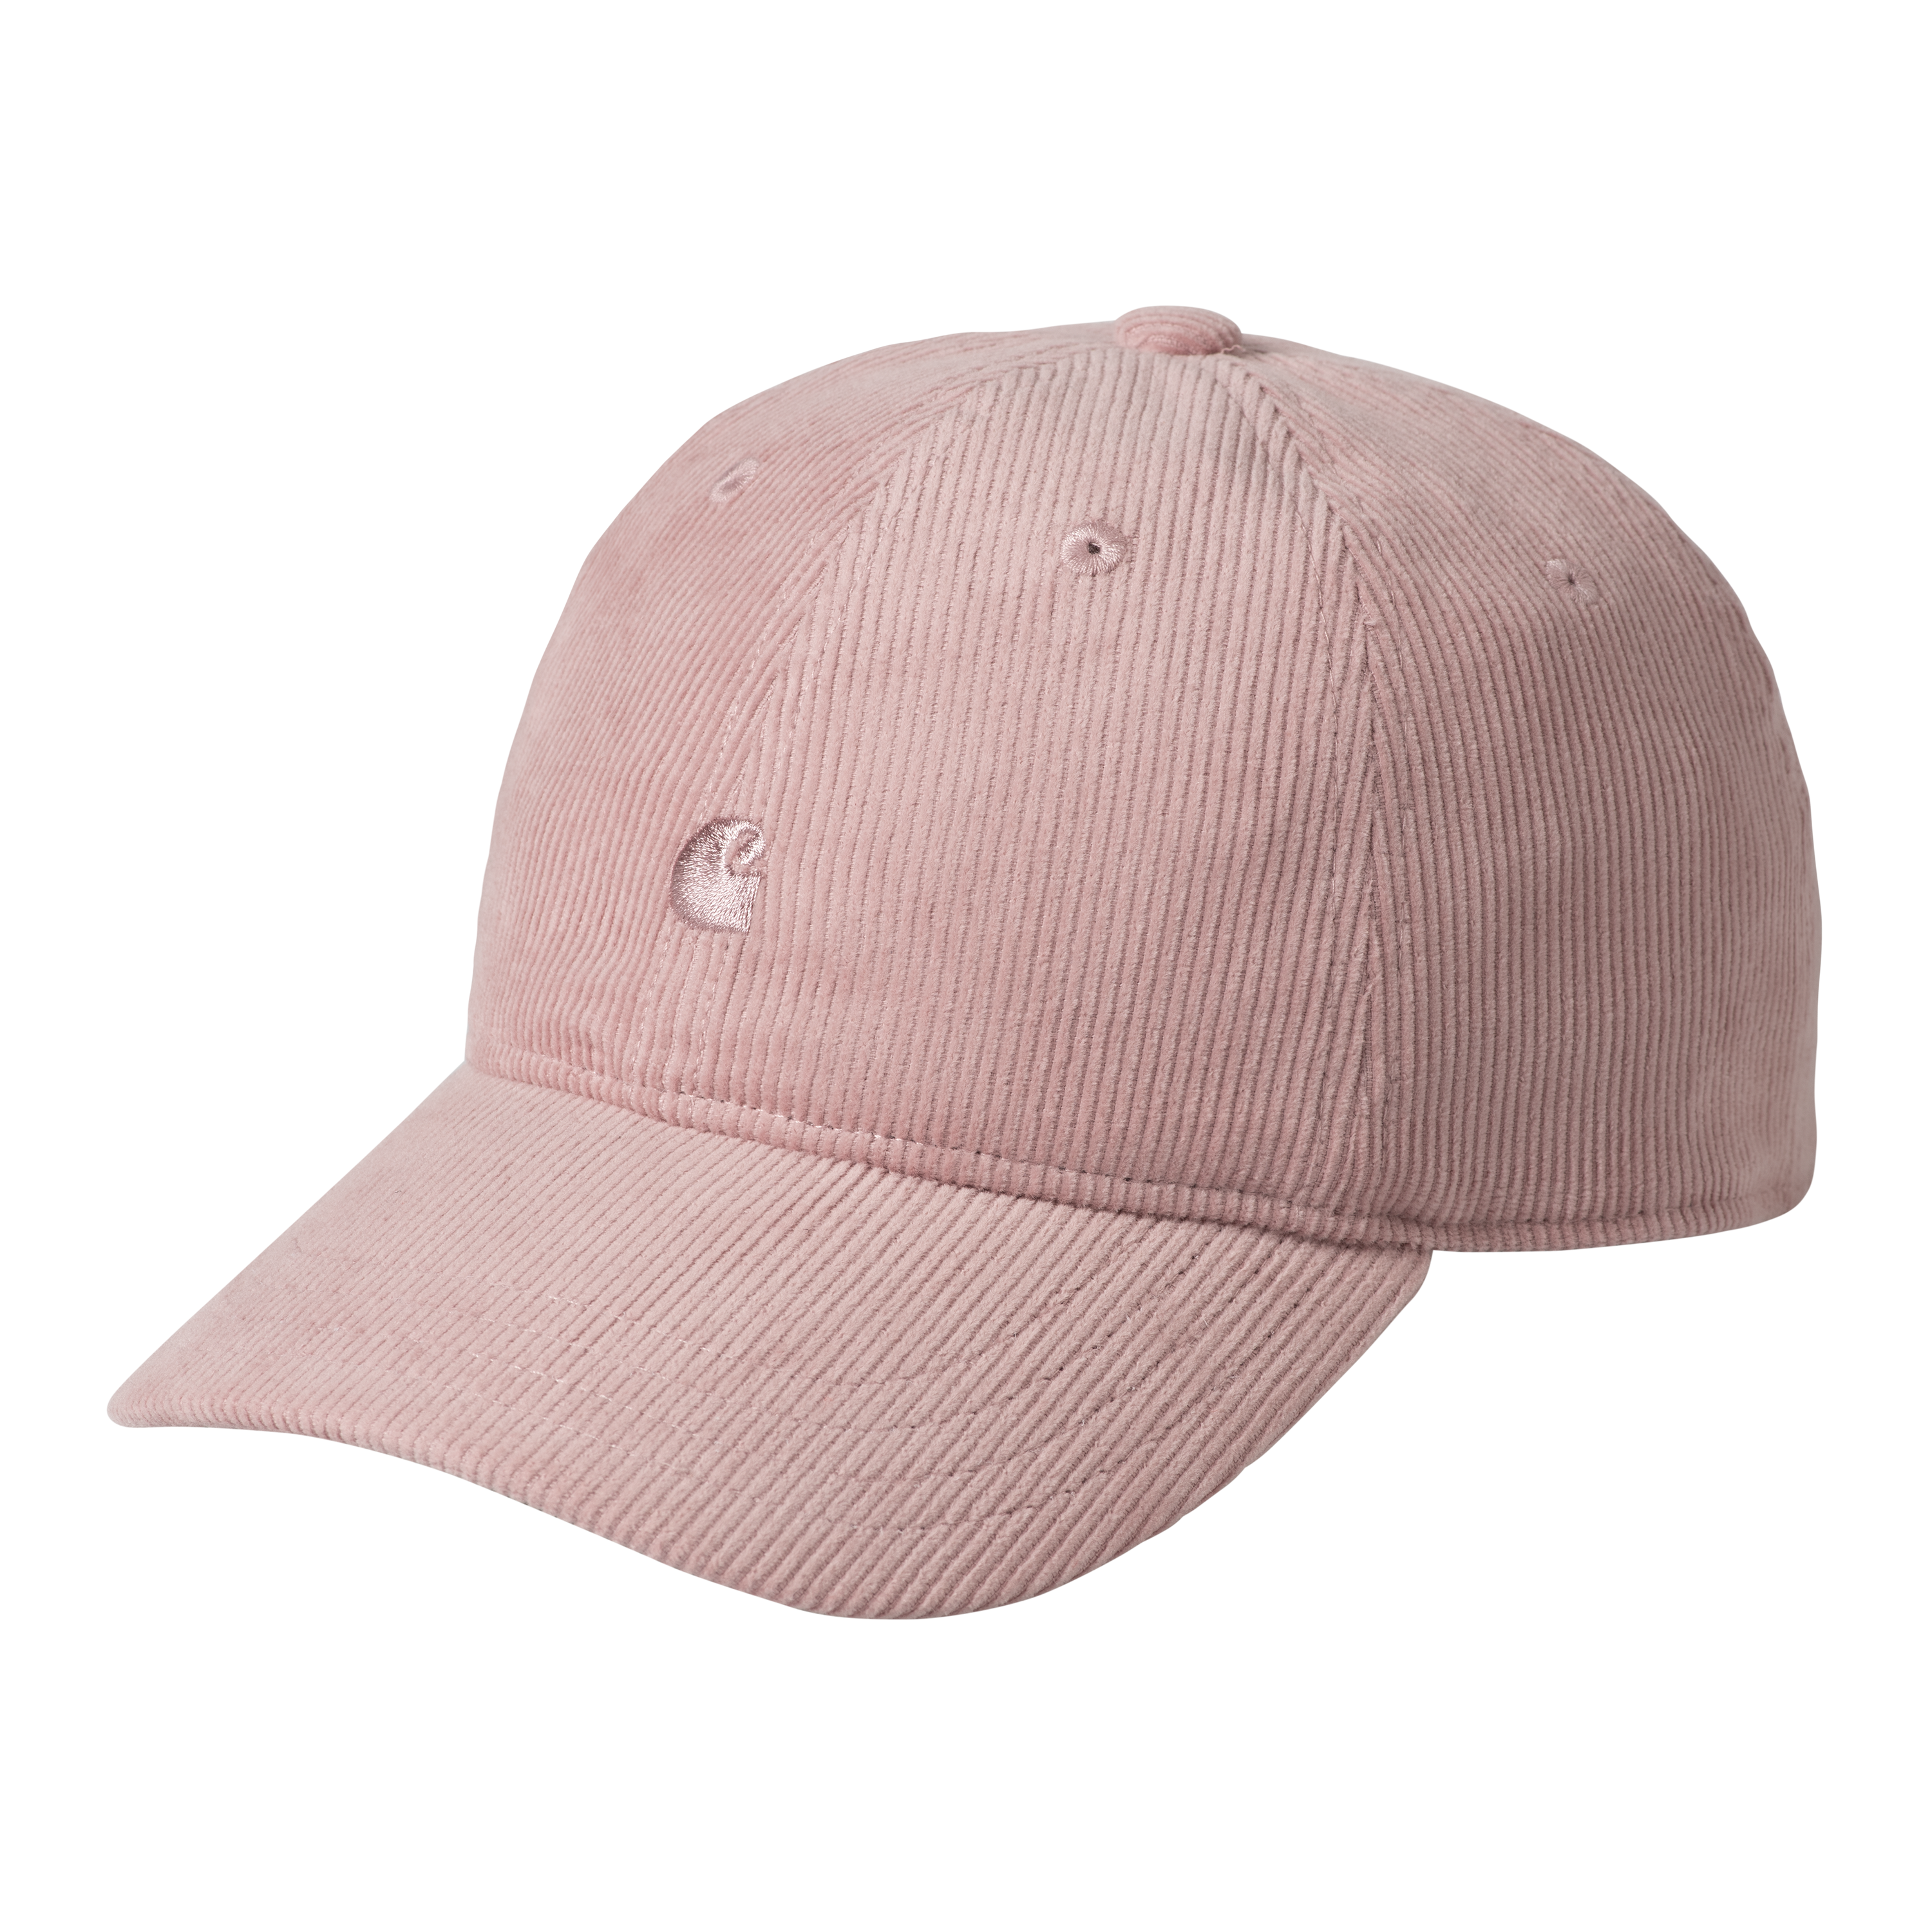 Carhartt WIP Harlem Cap in Pink